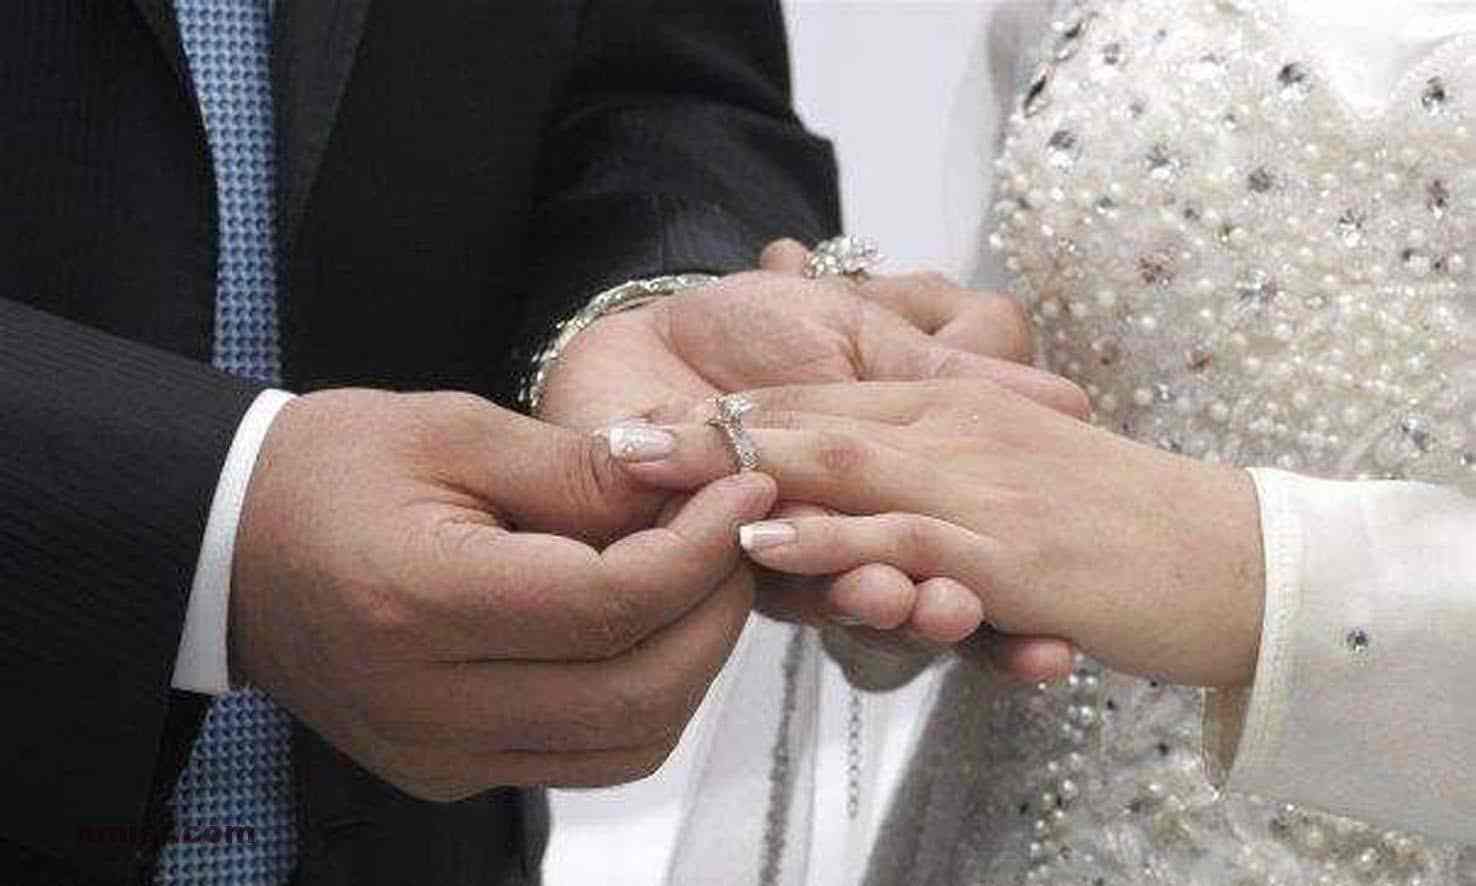 عروس ترفع دعوى خلع في أول يوم زفافها بسبب حماتها